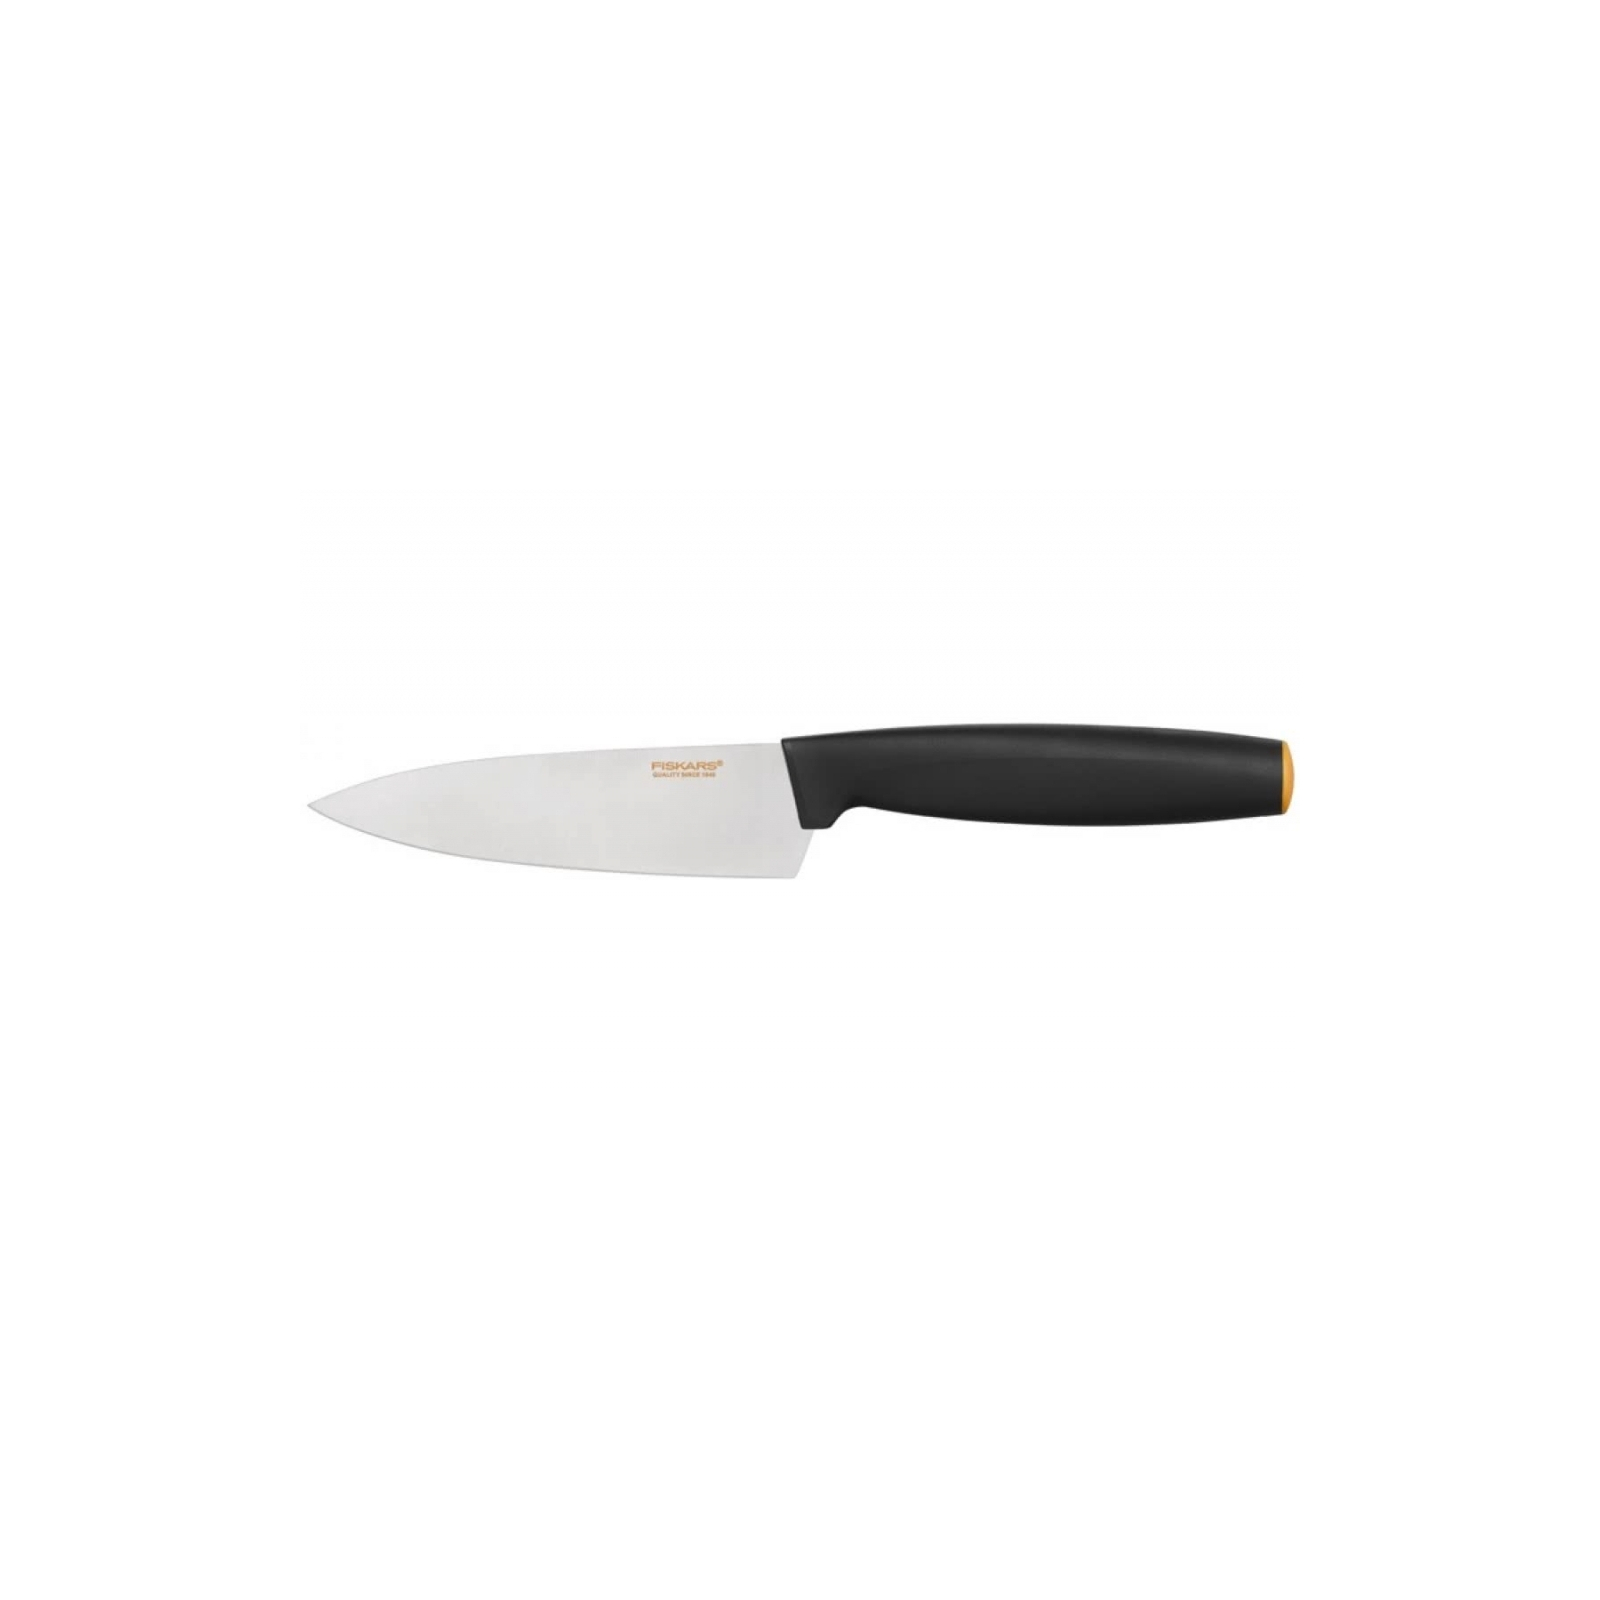 Кухонный нож Fiskars Functional Form поварской 12 см Black (1014196)